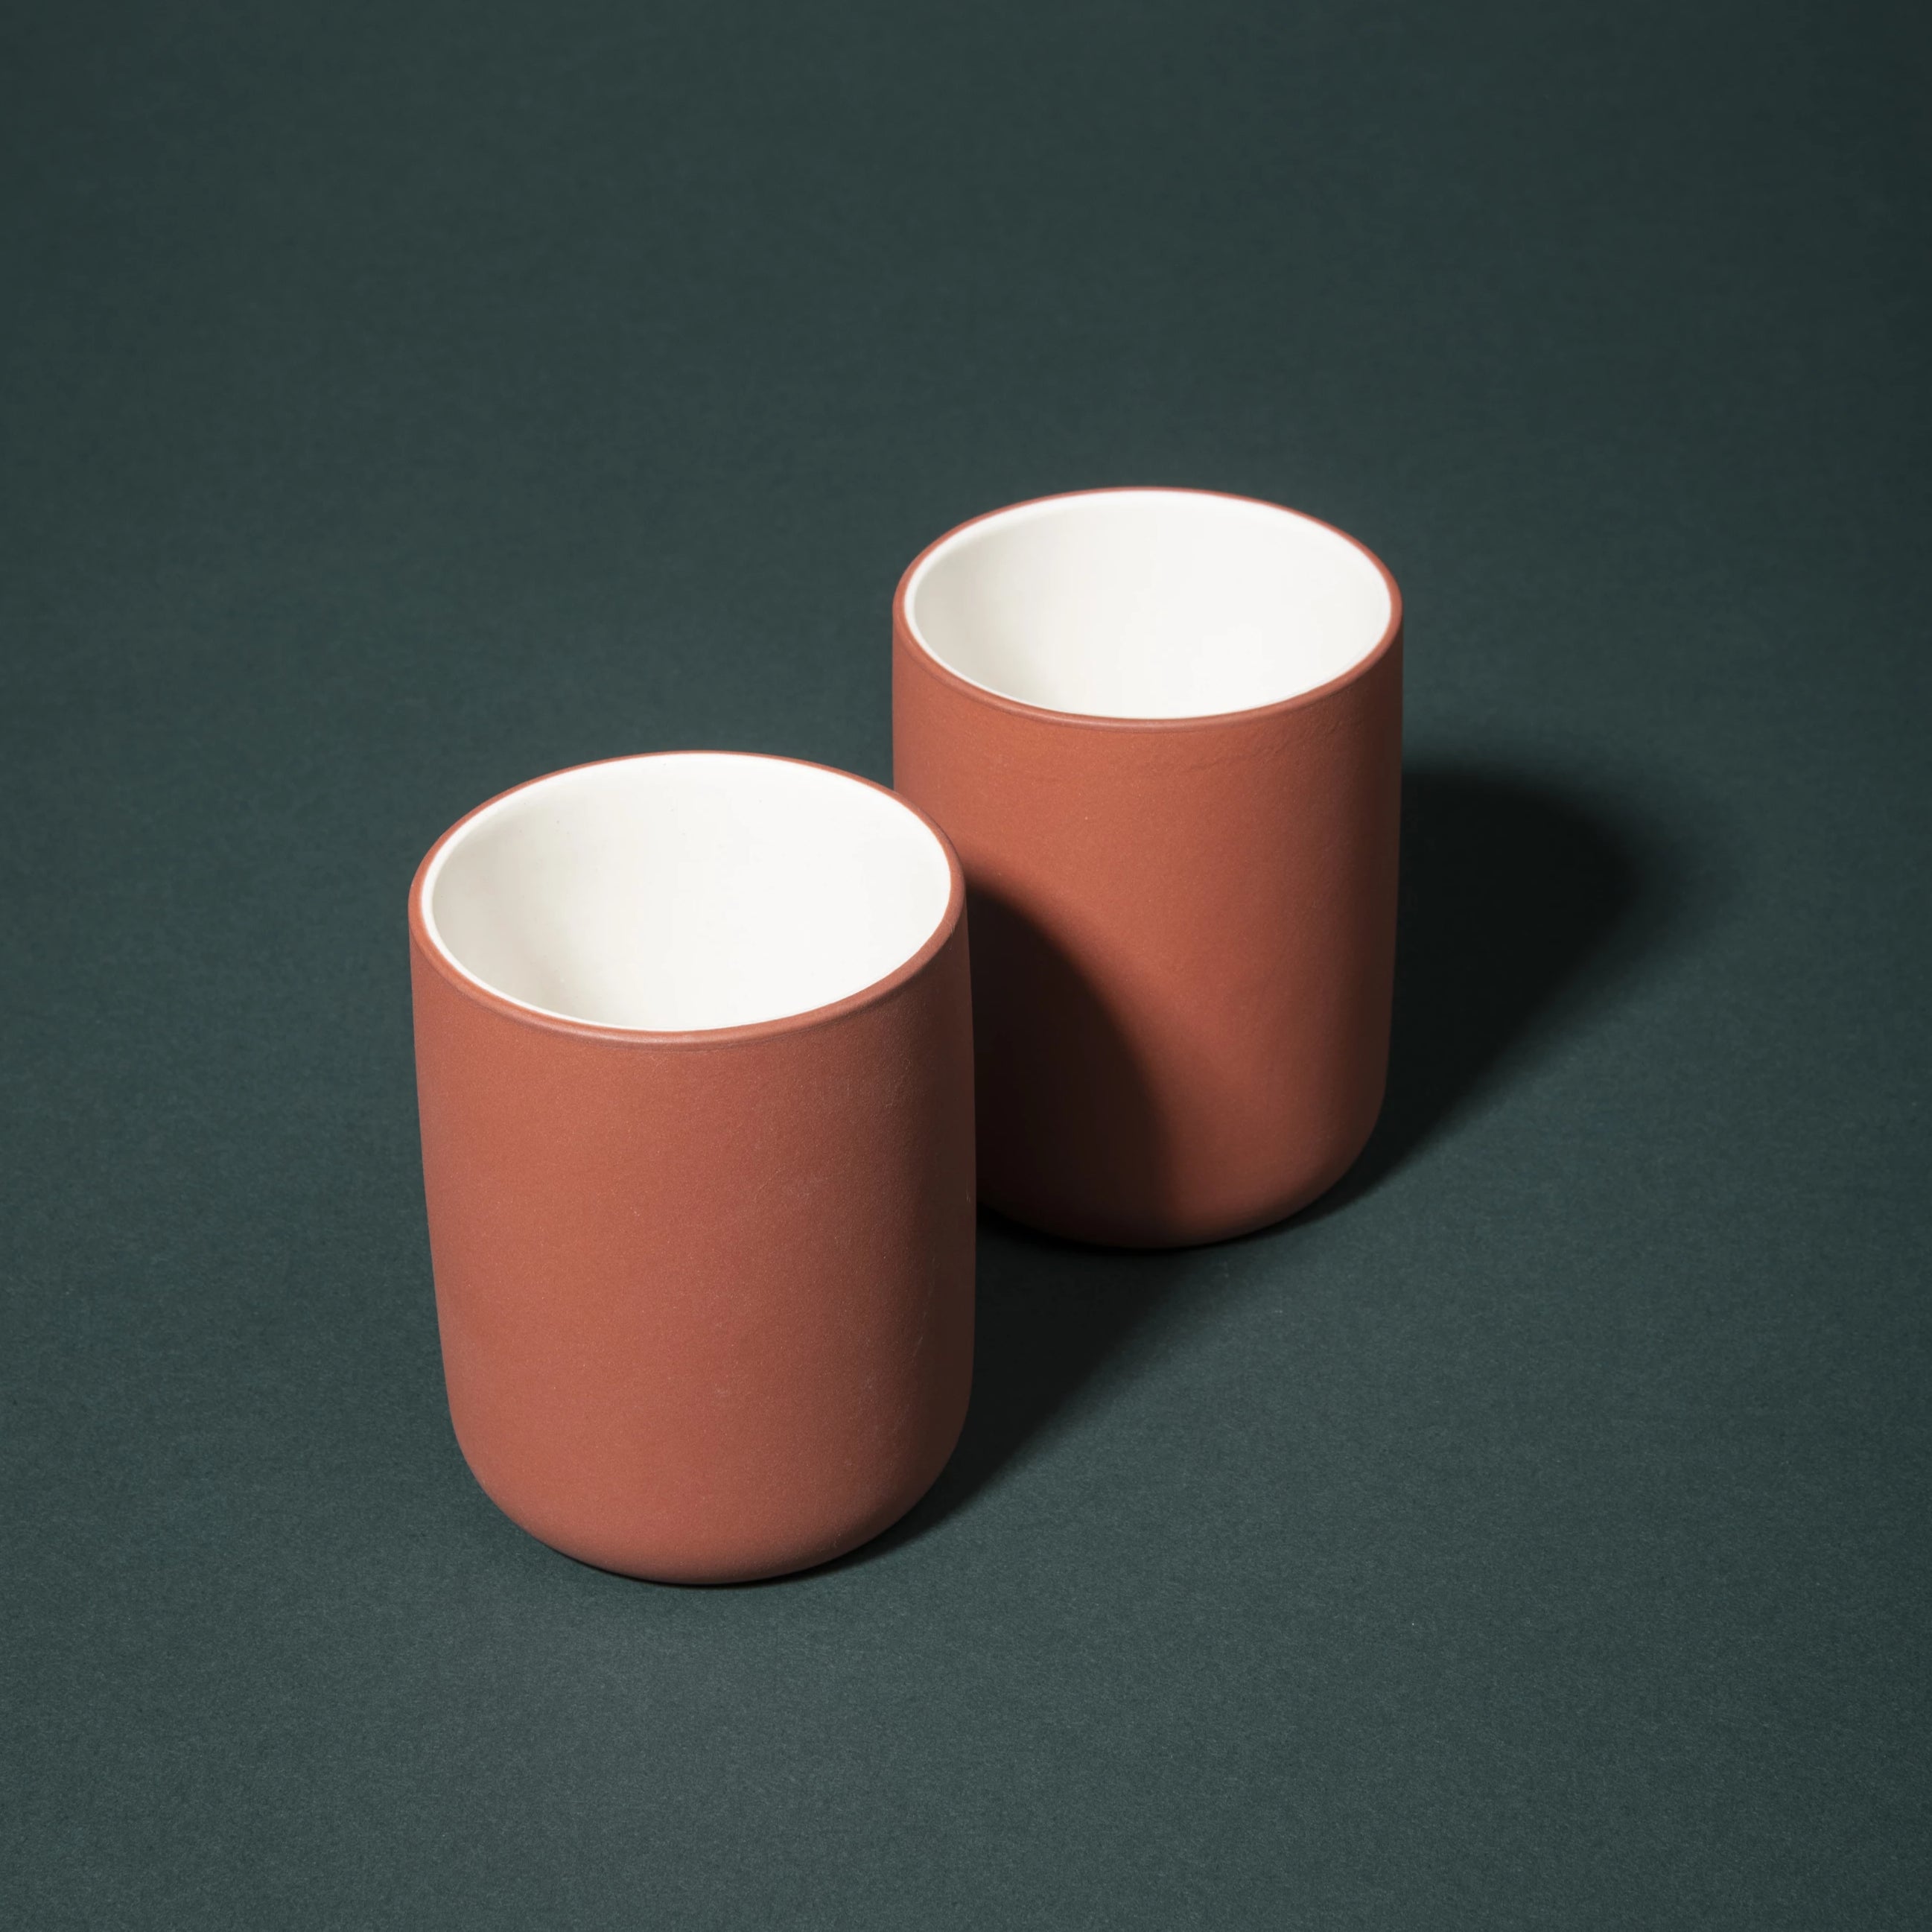 Archive Studio Amsterdam Terracotta Colored Stoneware Mugs